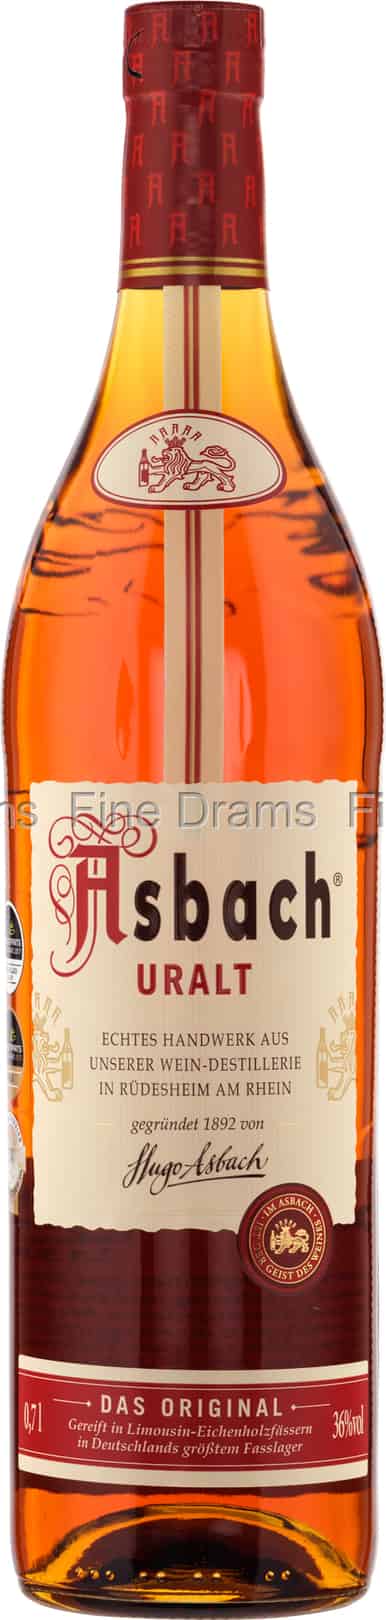 Asbach Uralt Brandy (36%)